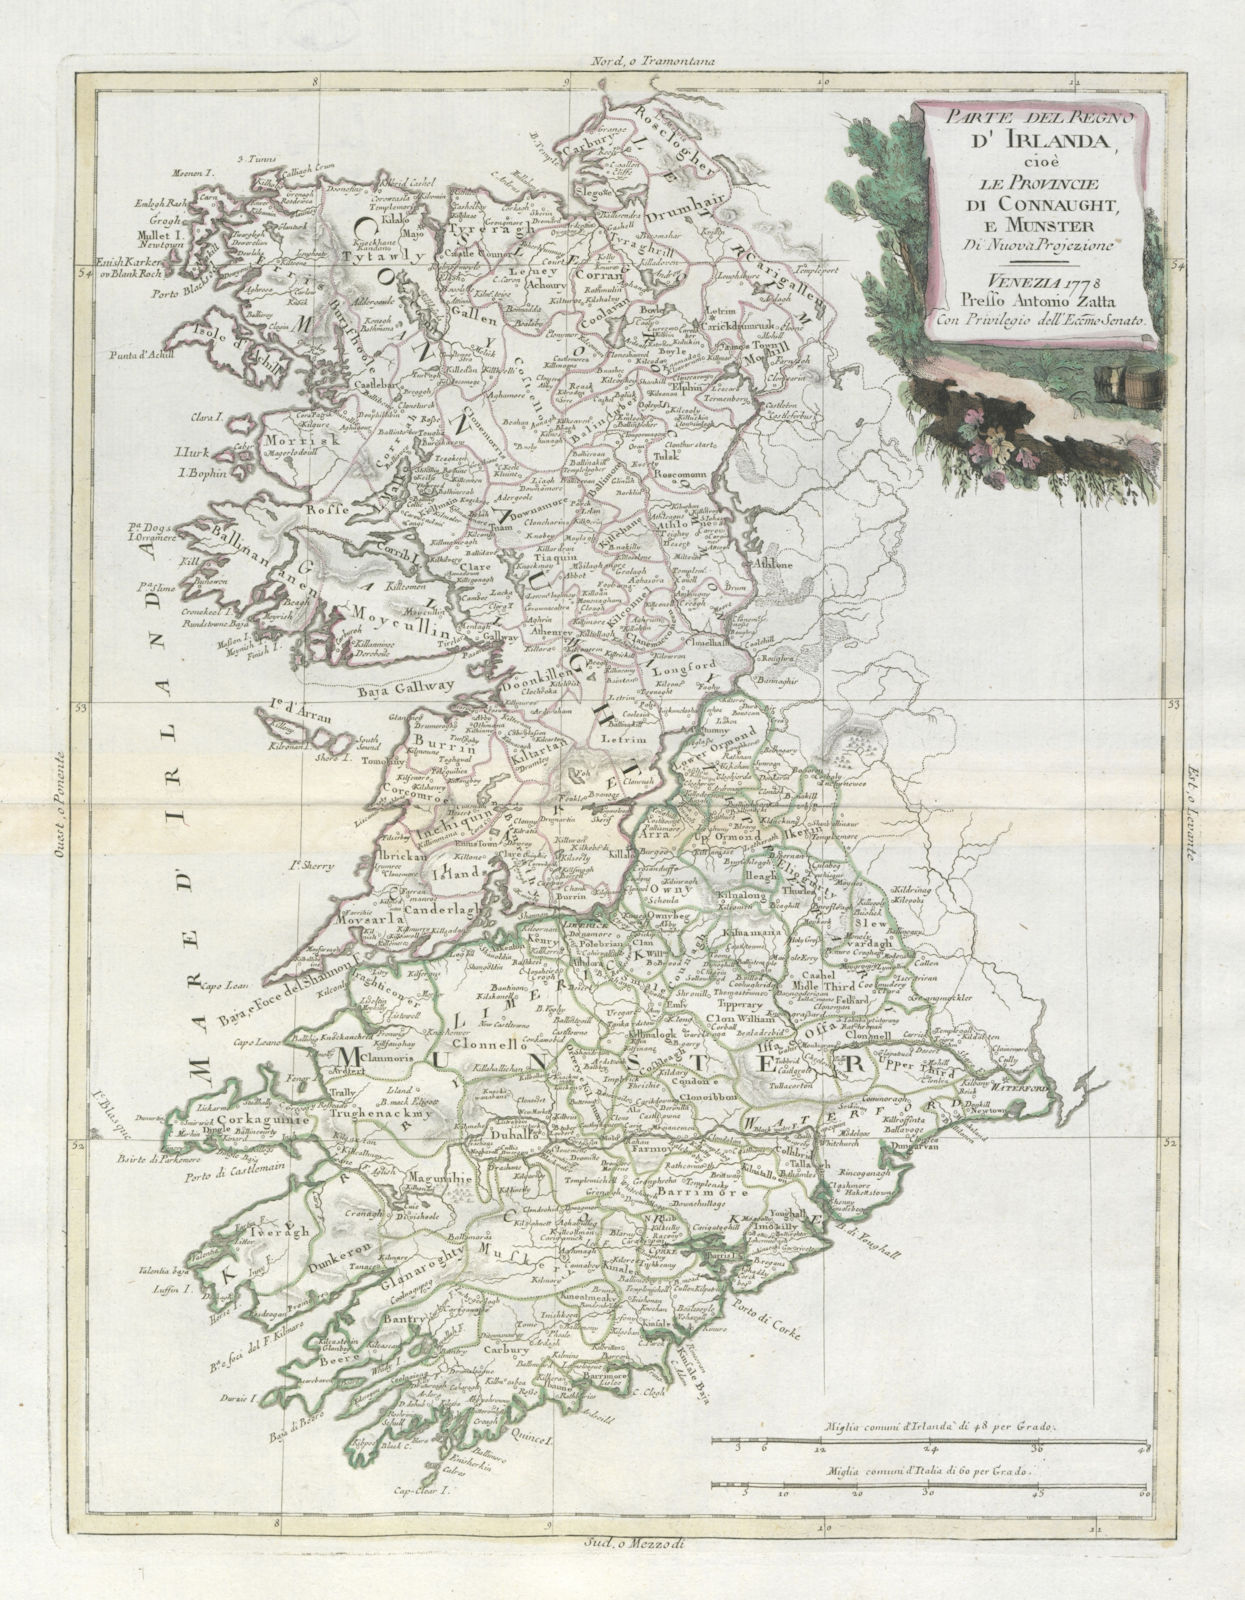 "Parte del Regno d'Irlanda… Connaught e Munster" Western Ireland. ZATTA 1779 map